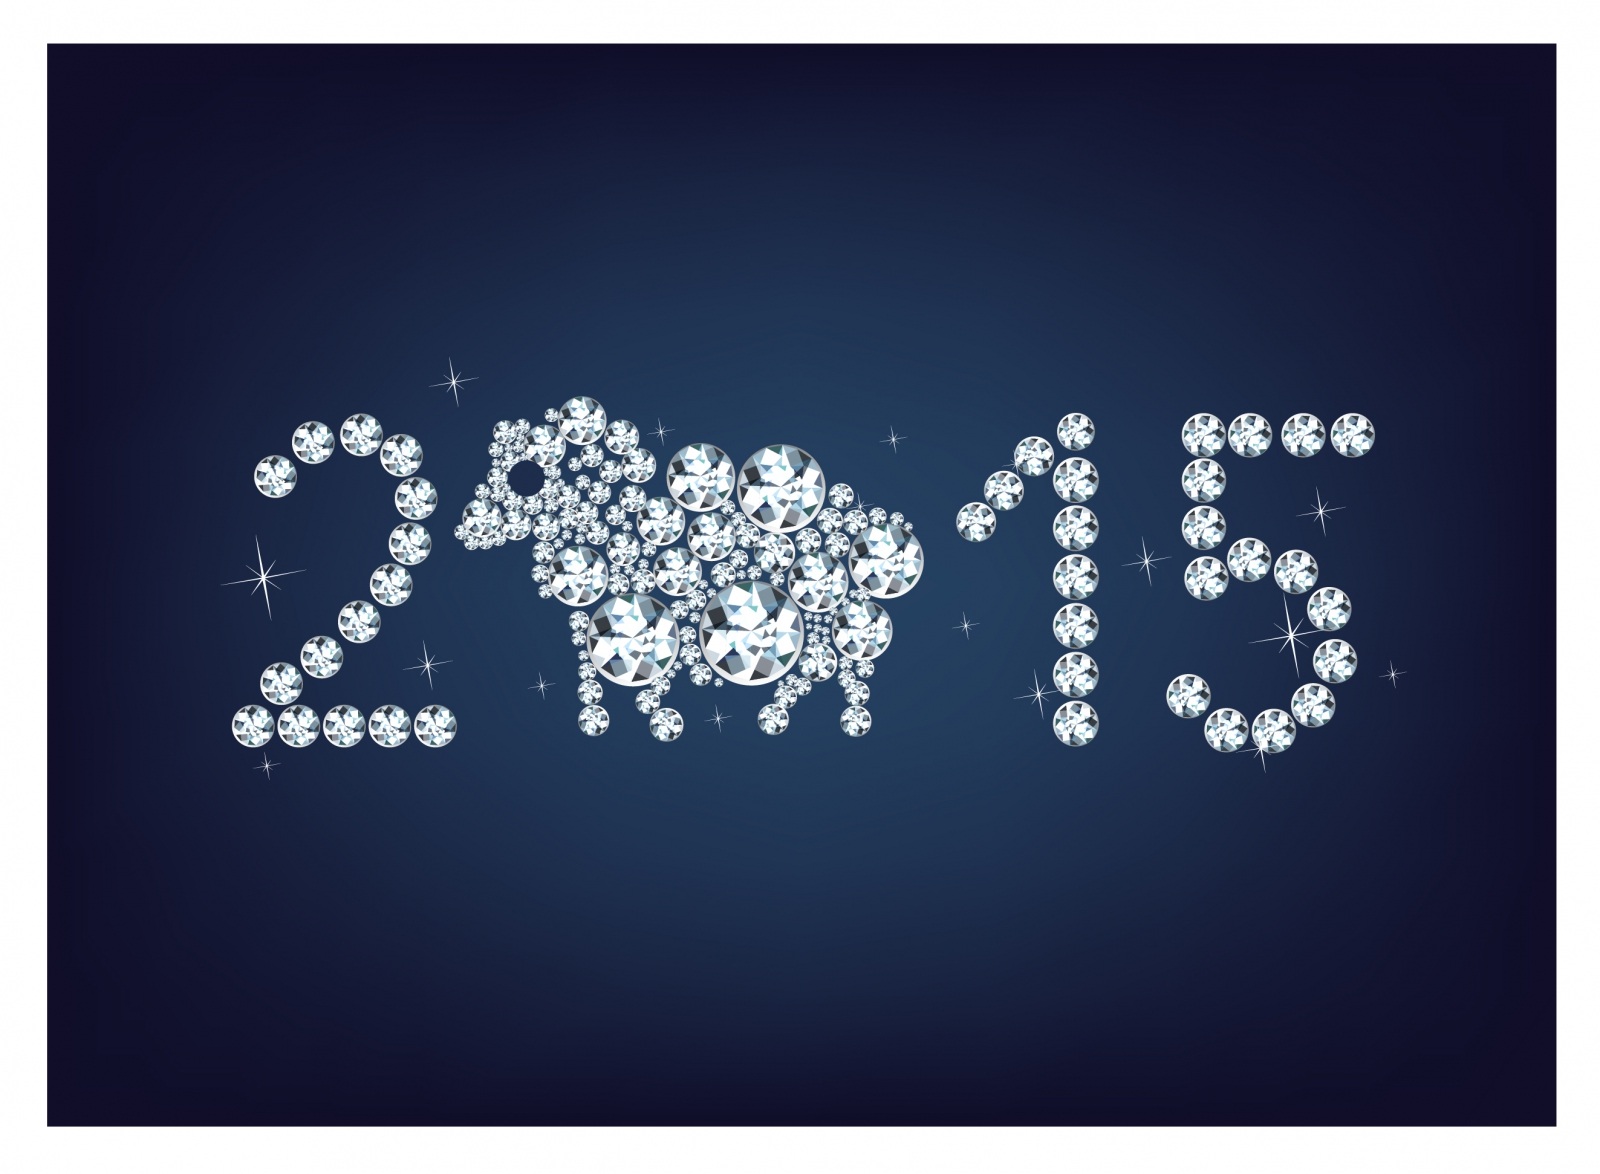 Hình nền chúc mừng năm mới 2015